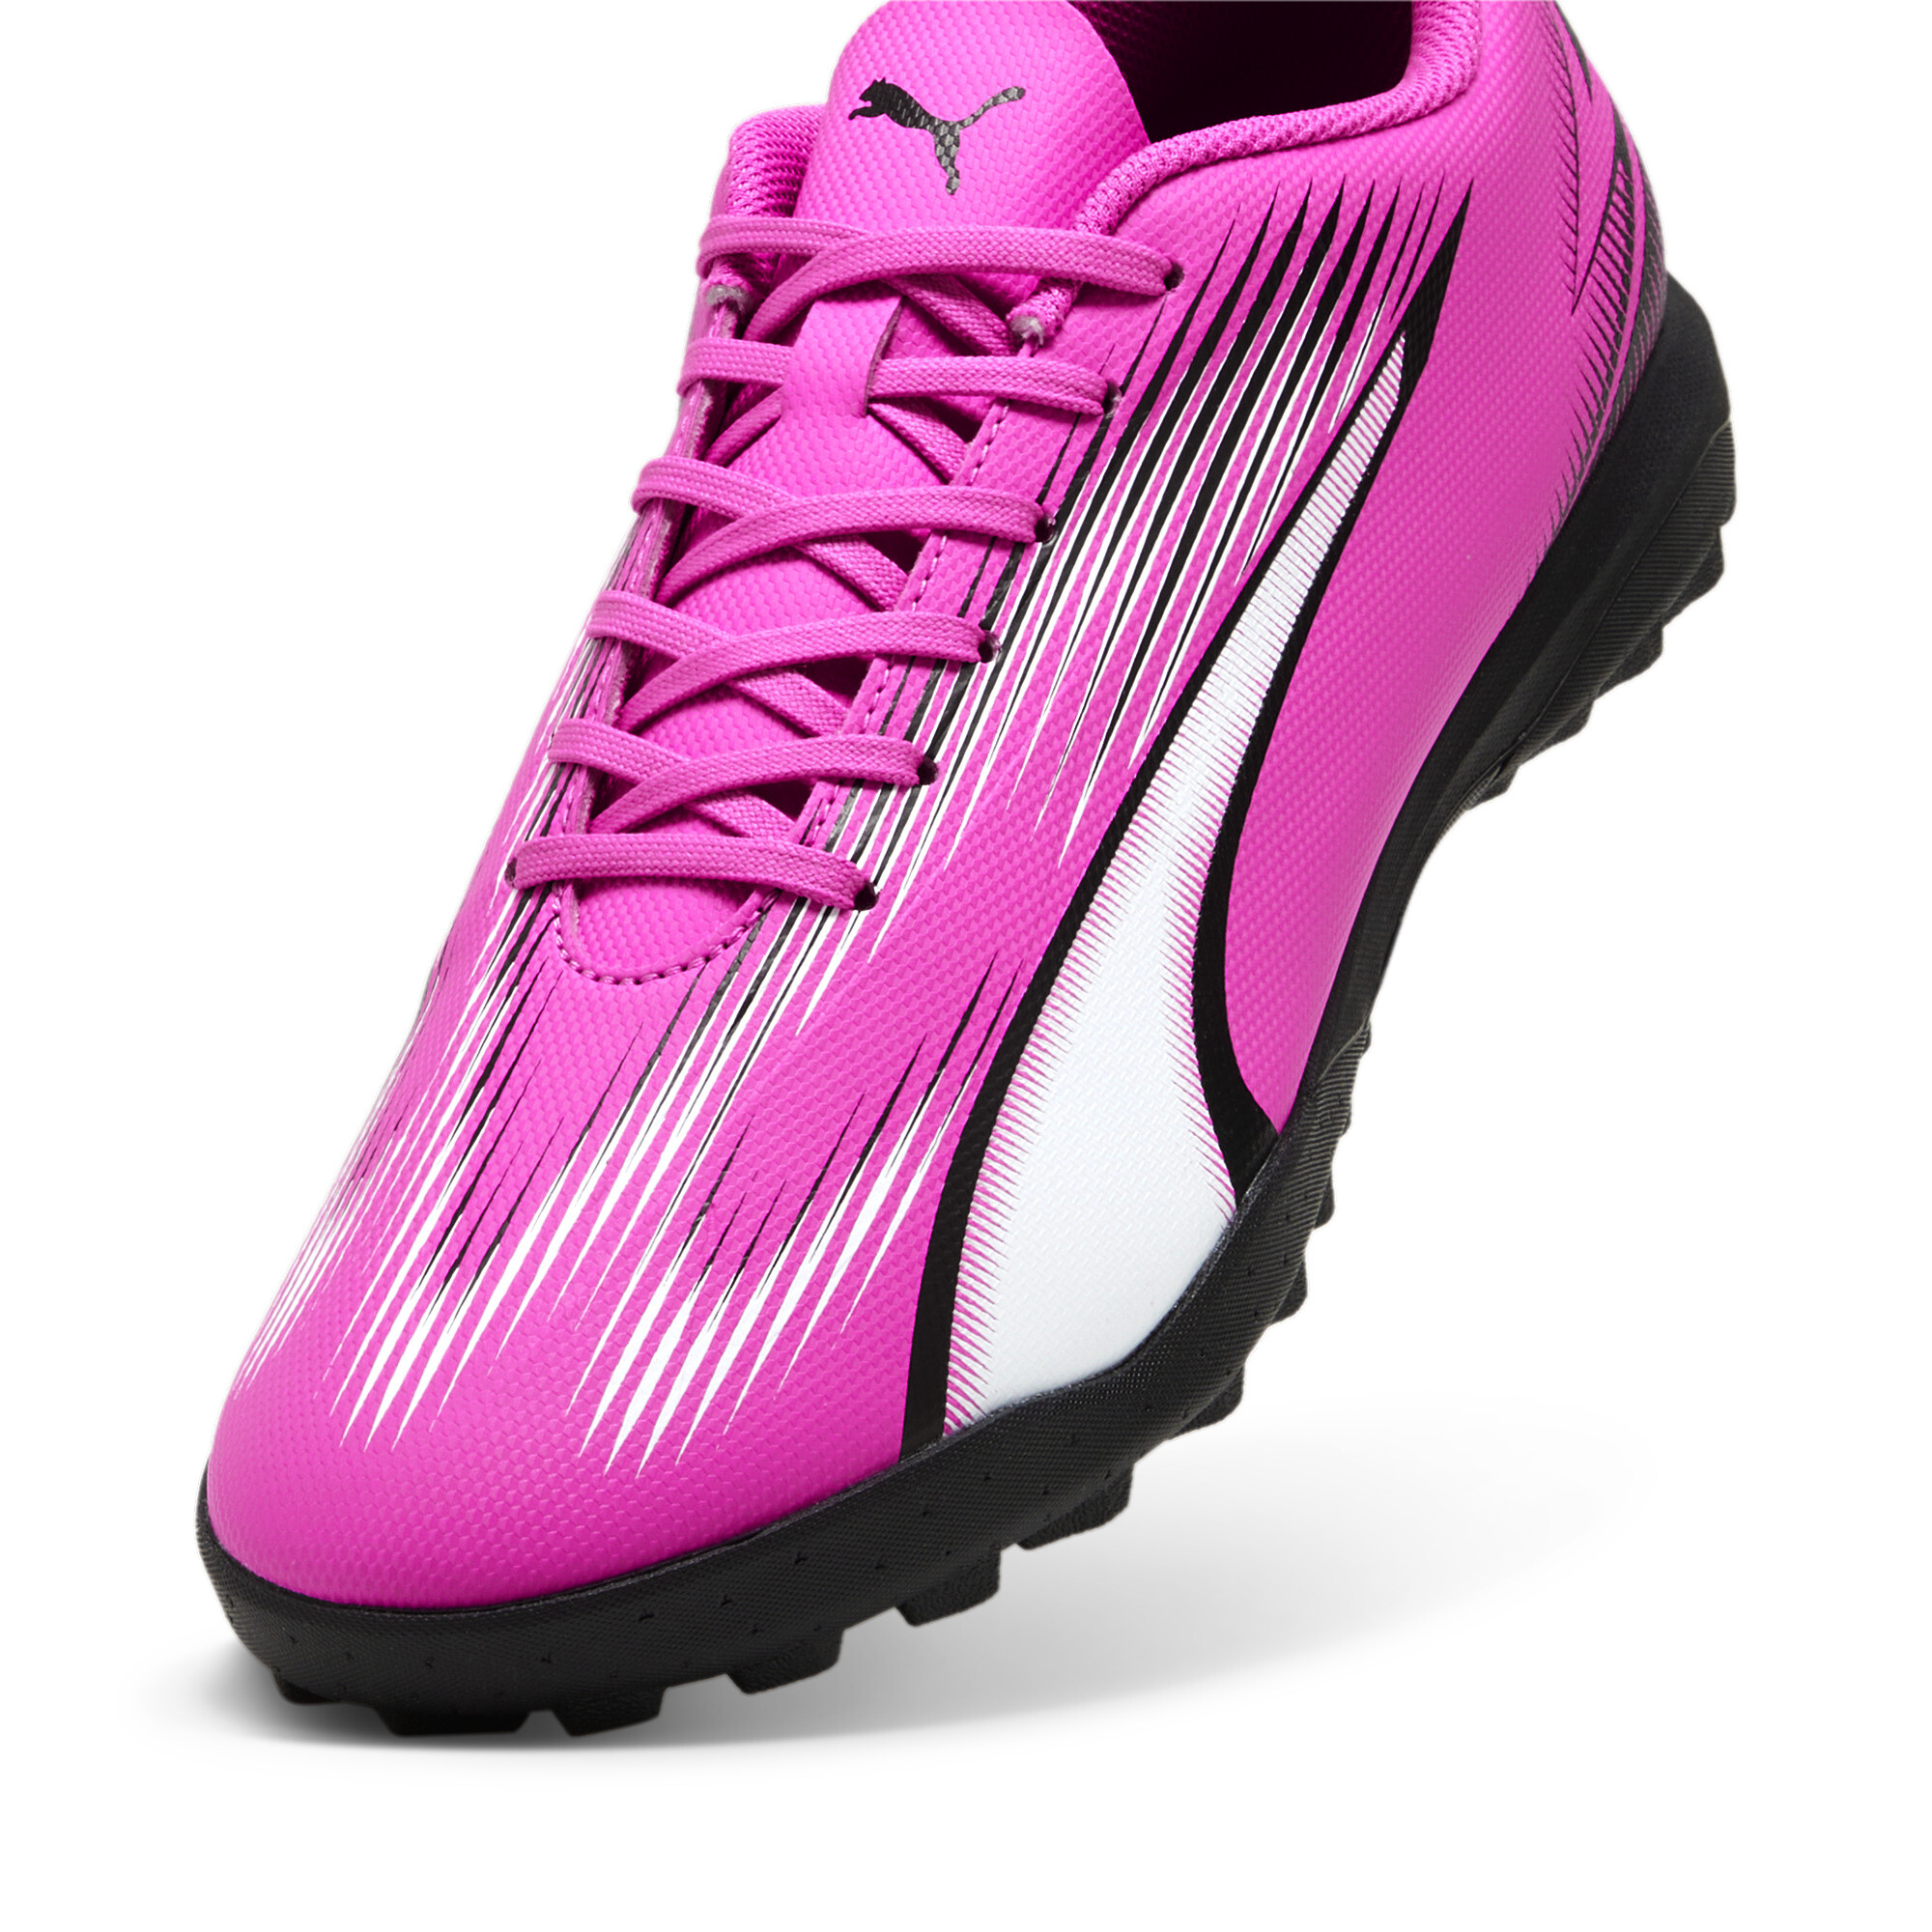 Men's PUMA ULTRA PLAY TT Football Boots In Pink, Size EU 40.5